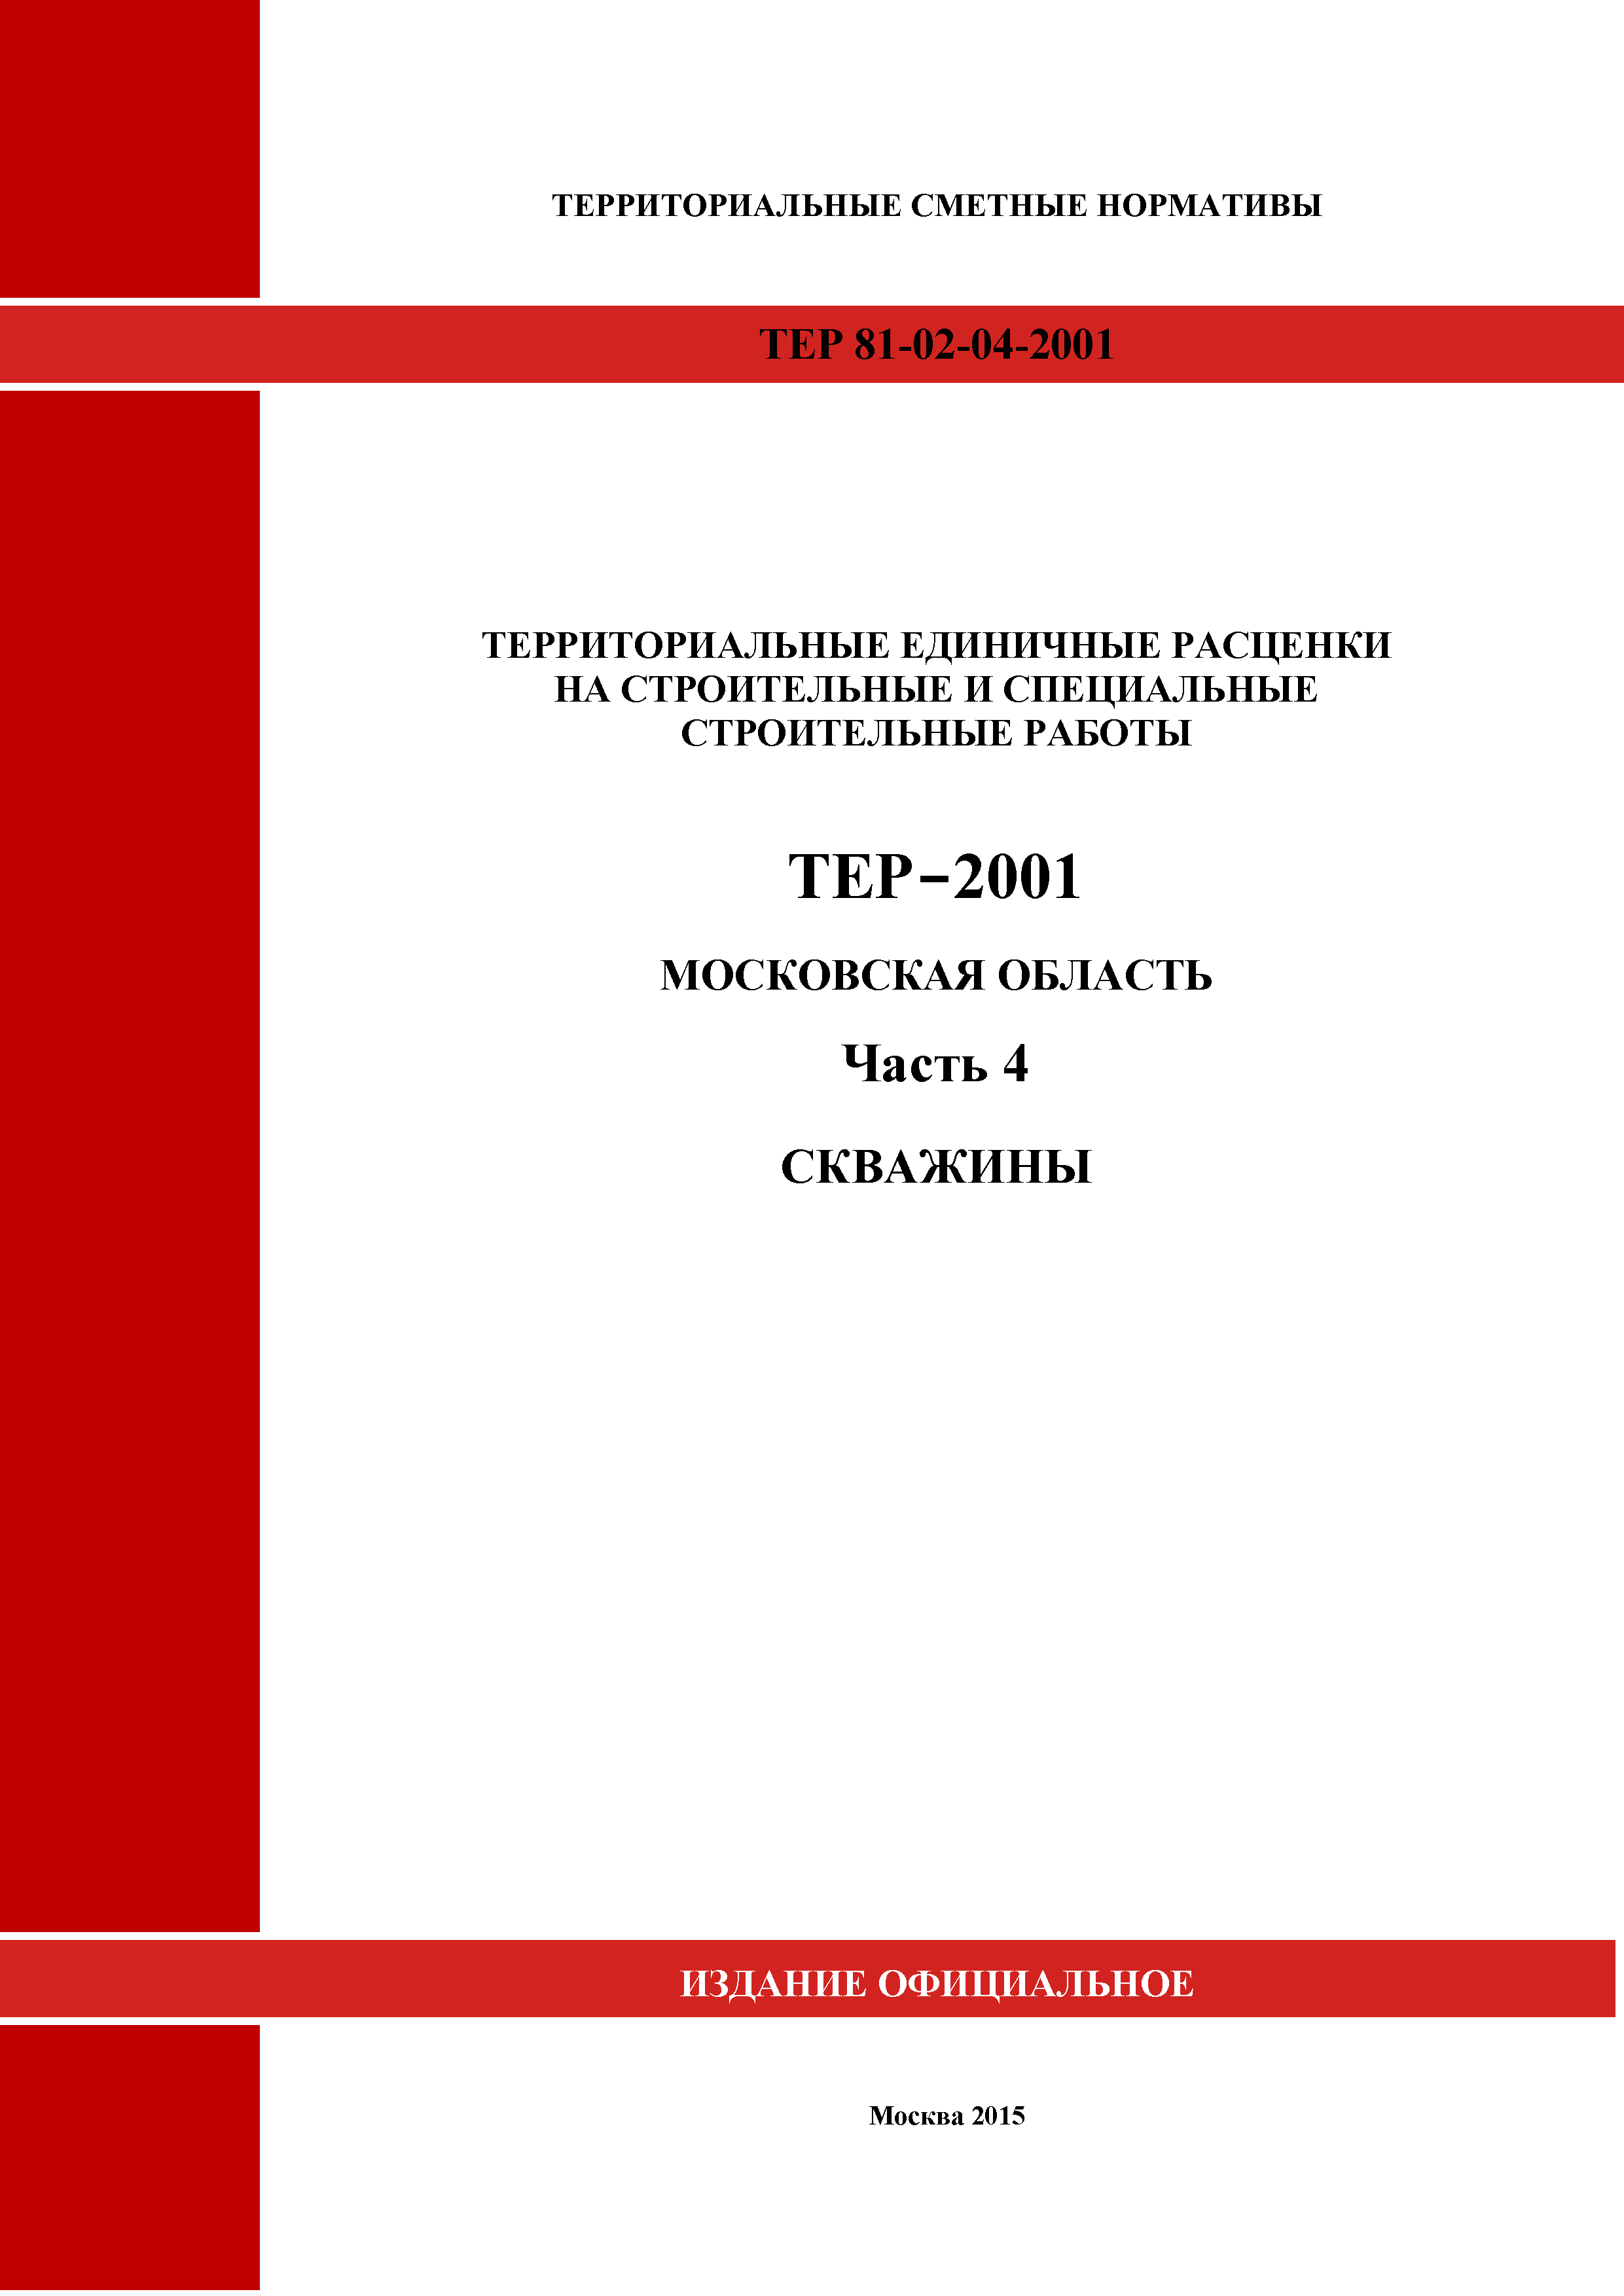 ТЕР 4-2001 Московской области